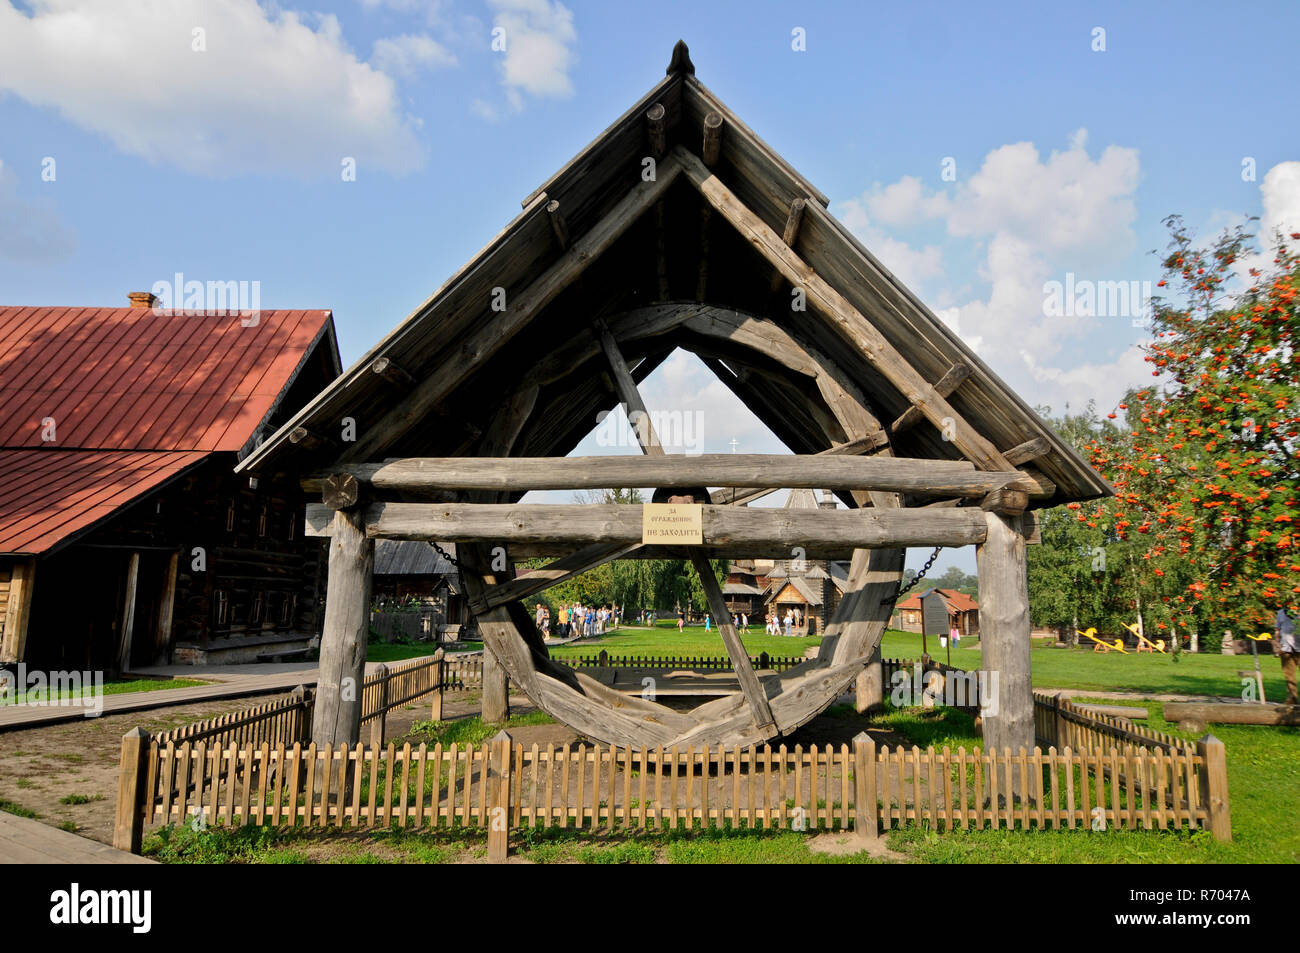 Museo di Architettura in Legno e vita contadina - legno antico mulino. Suzdal, Russia Foto Stock